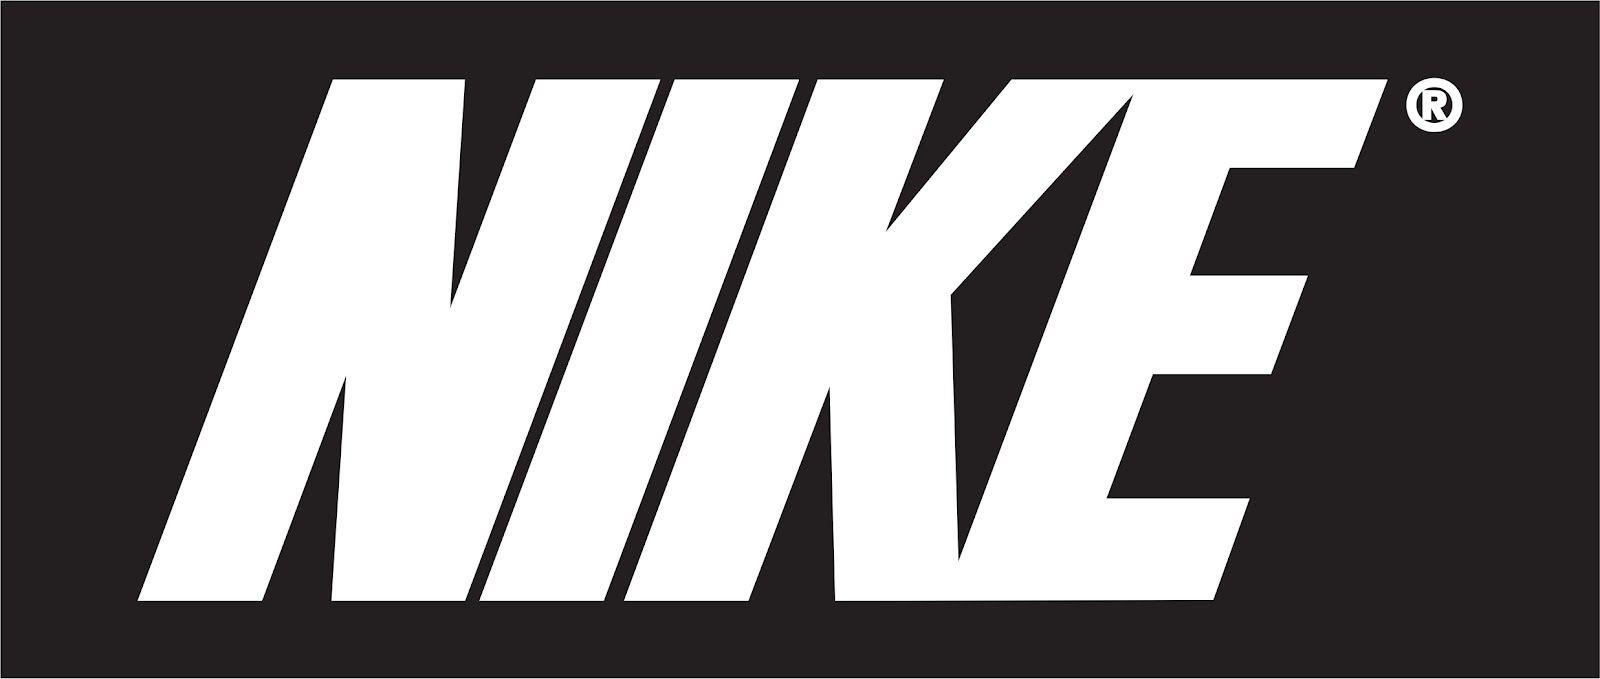 Nike Word Logo - NIKE: Real or Fake